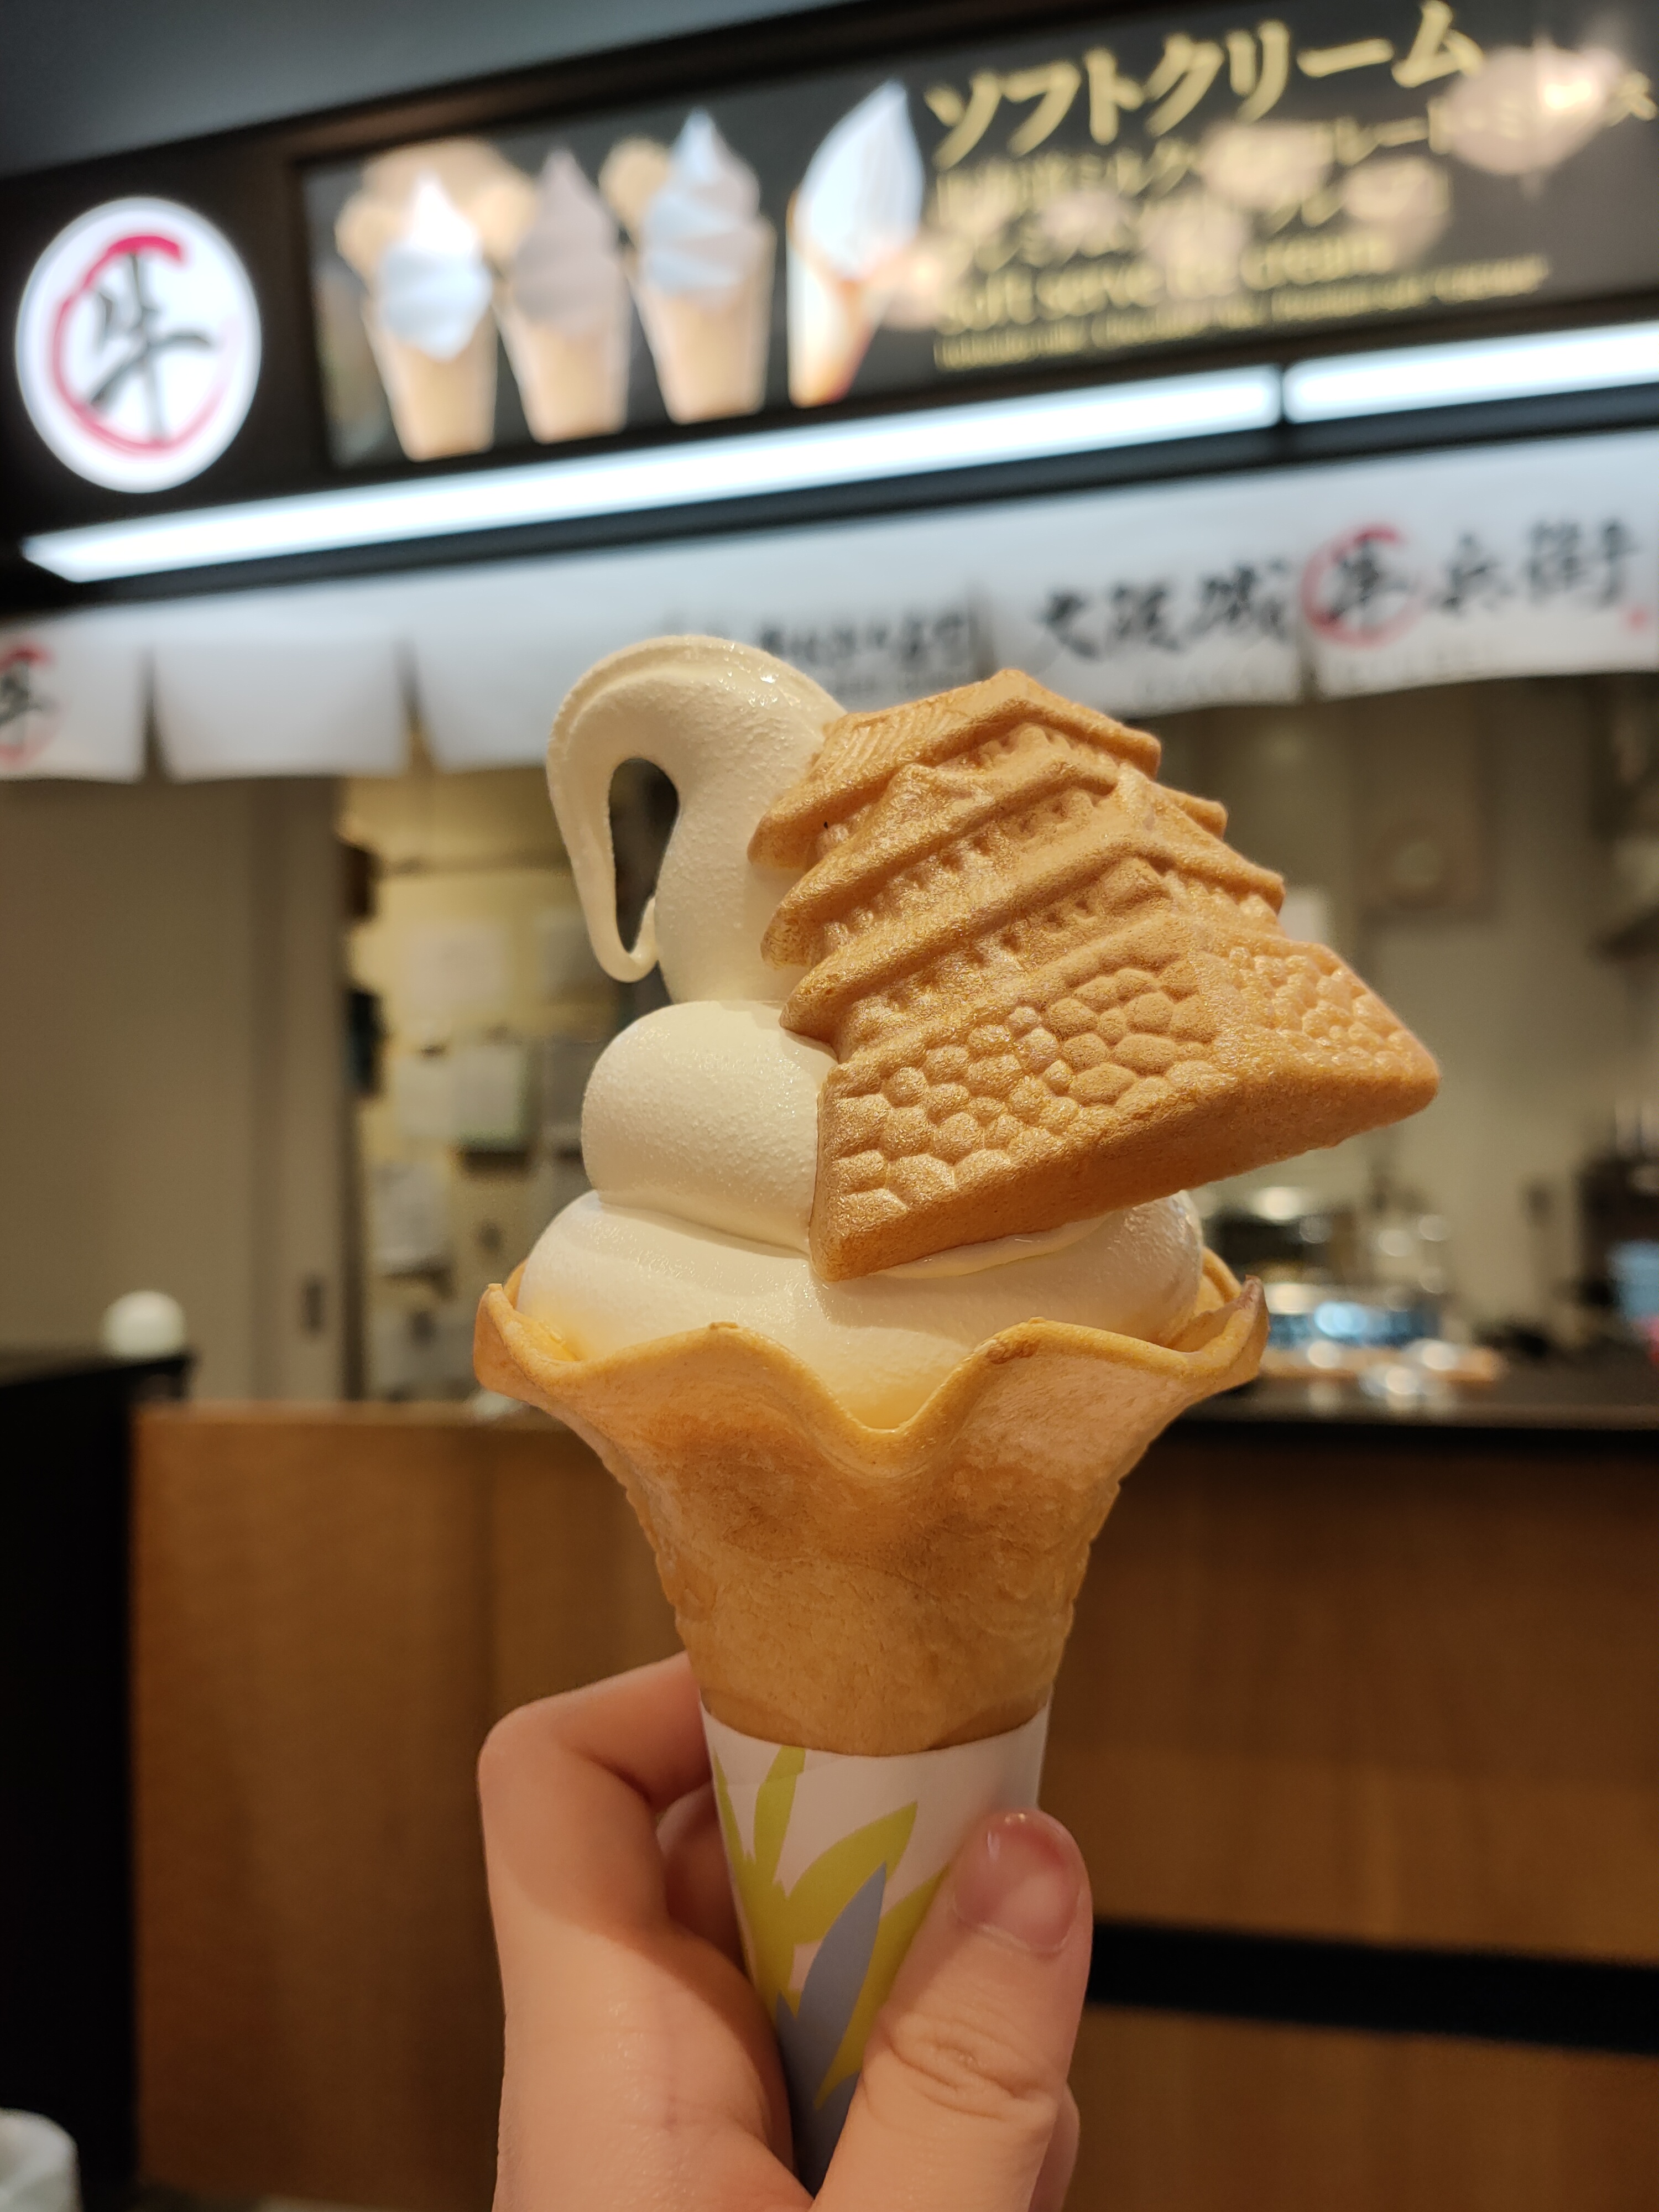 Osaka Castle Ice Cream